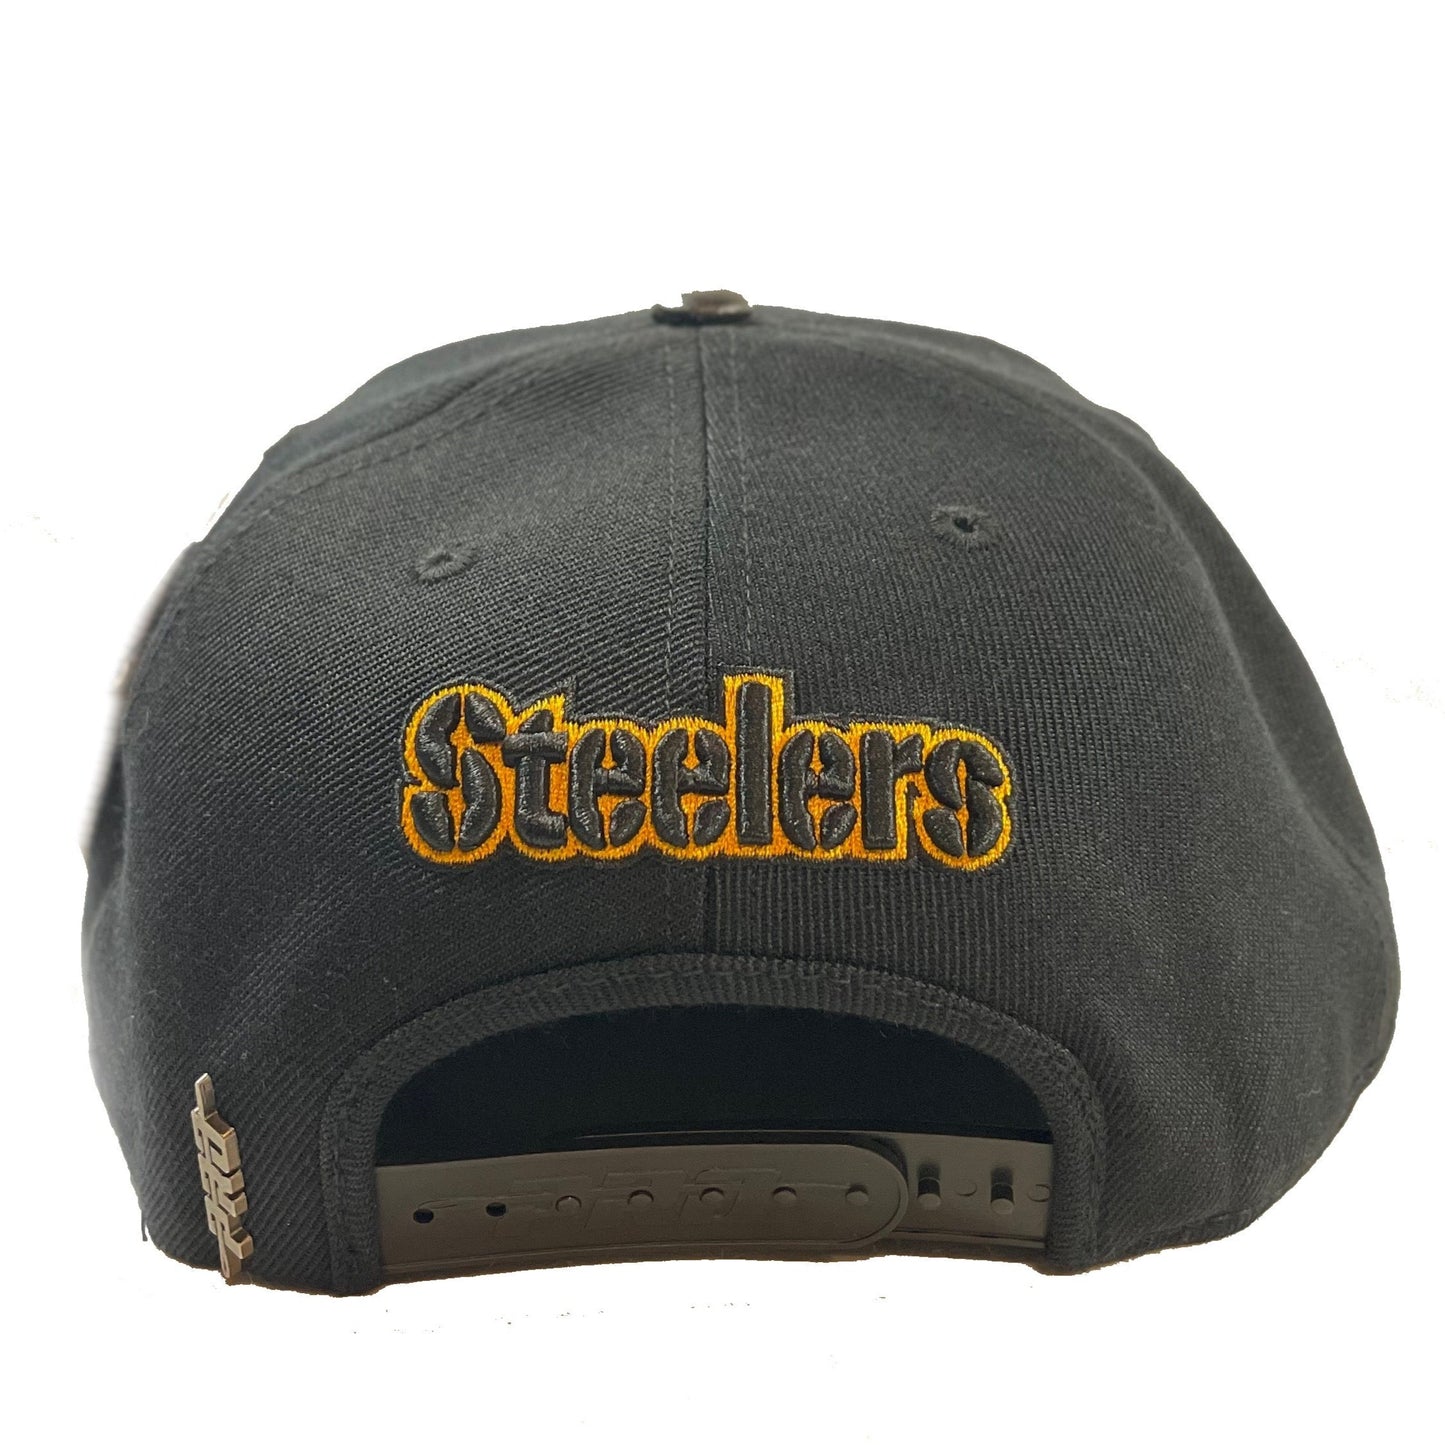 Pittsburgh Steelers (Black) Snapback